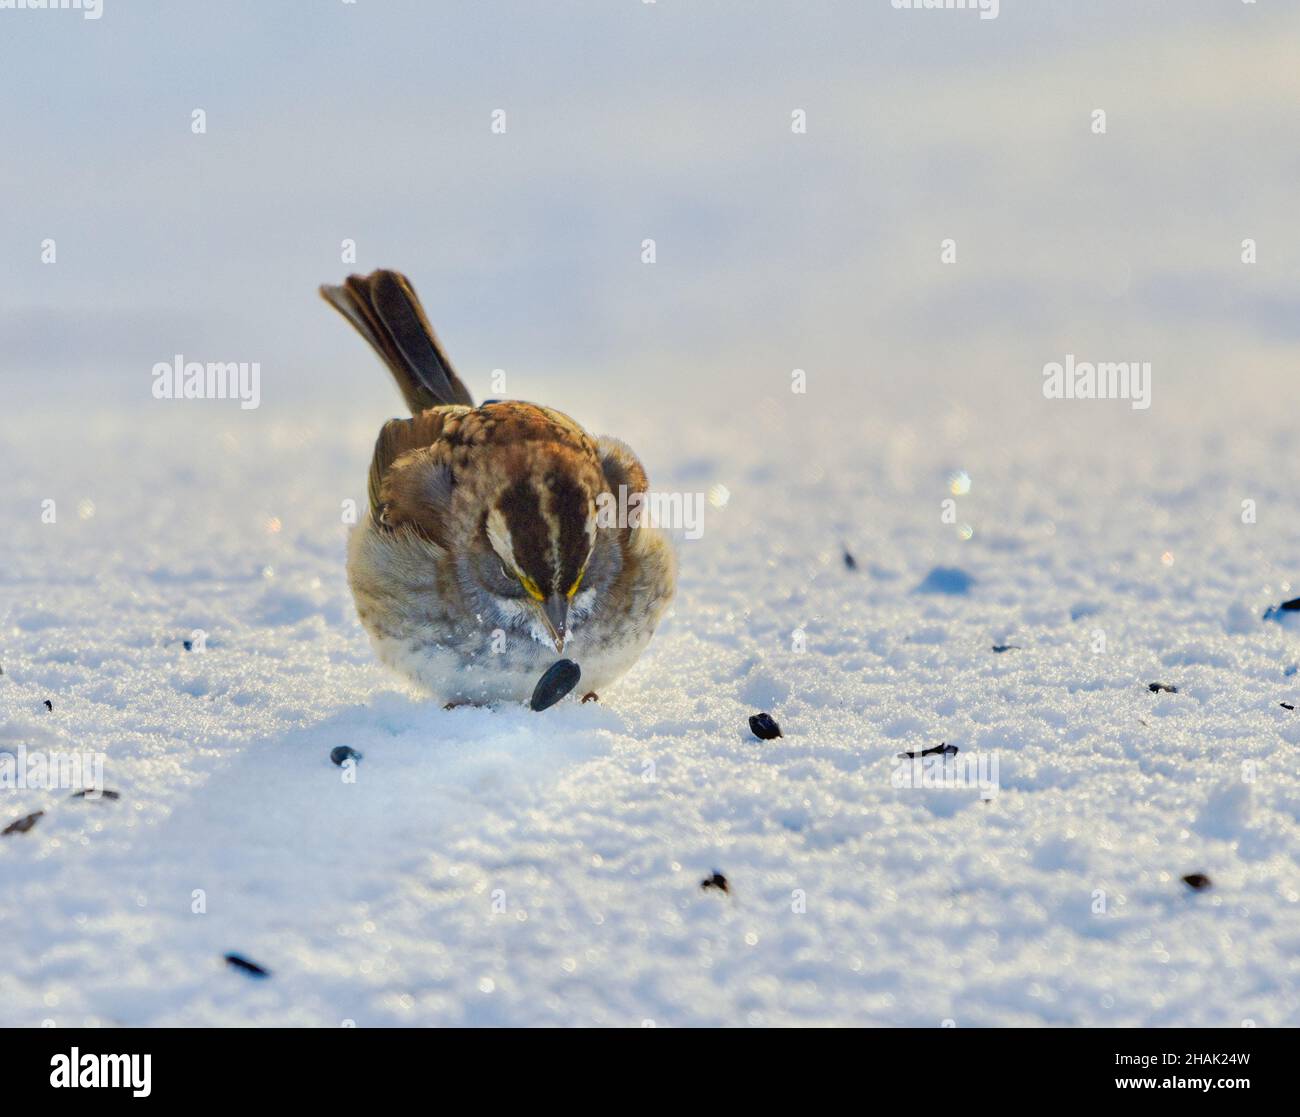 Vista frontal de un gorrión de garganta blanca (Zonotrichia albicollis) recogiendo una semilla en la nieve. Primer plano. Espacio de copia. Foto de stock